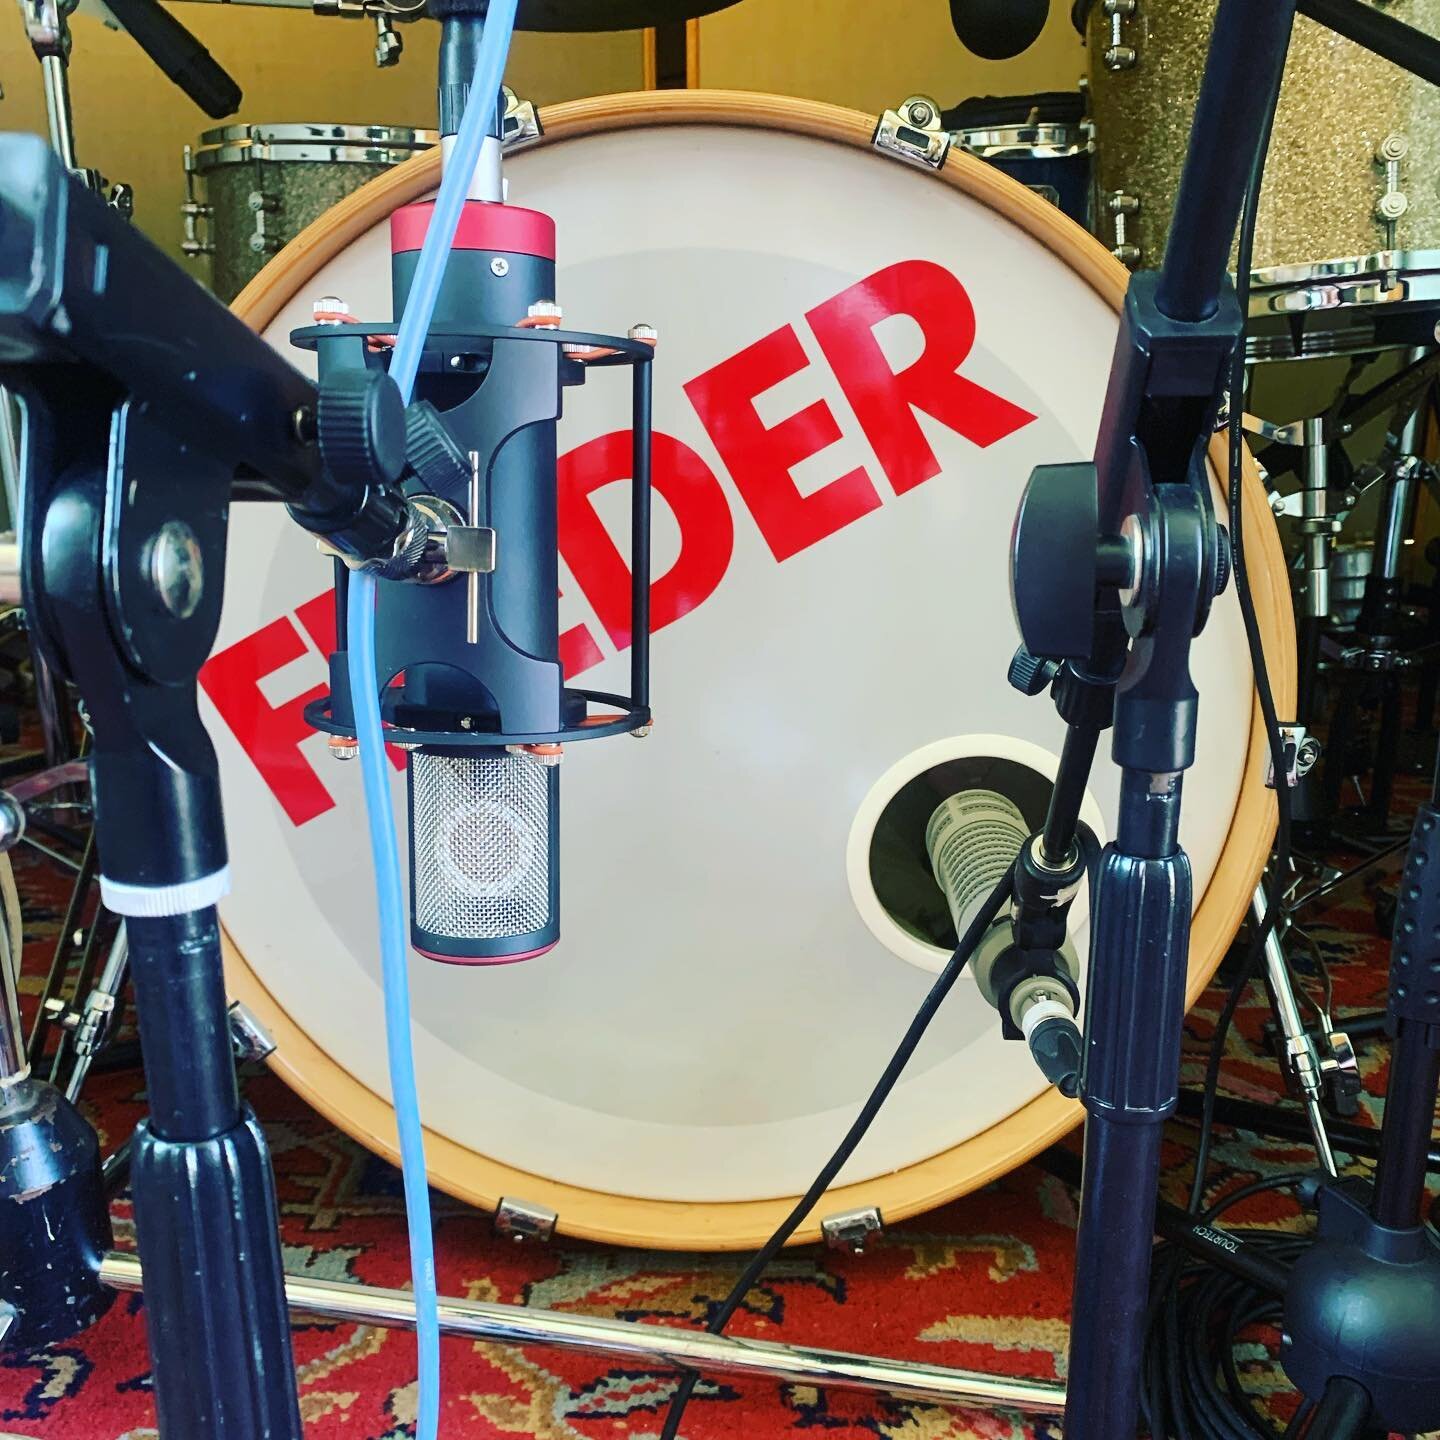 Cool microphones doing cool things 
.
.

#studio #recording #recordingstudio #studiorecording #drums #bass #guitar #hammond #organ #leslie # #ssl #sslgseries #neve #neve1084 #neve1100 #neve33114 #music #neuman #neuman microphone #manleyreference 
#re